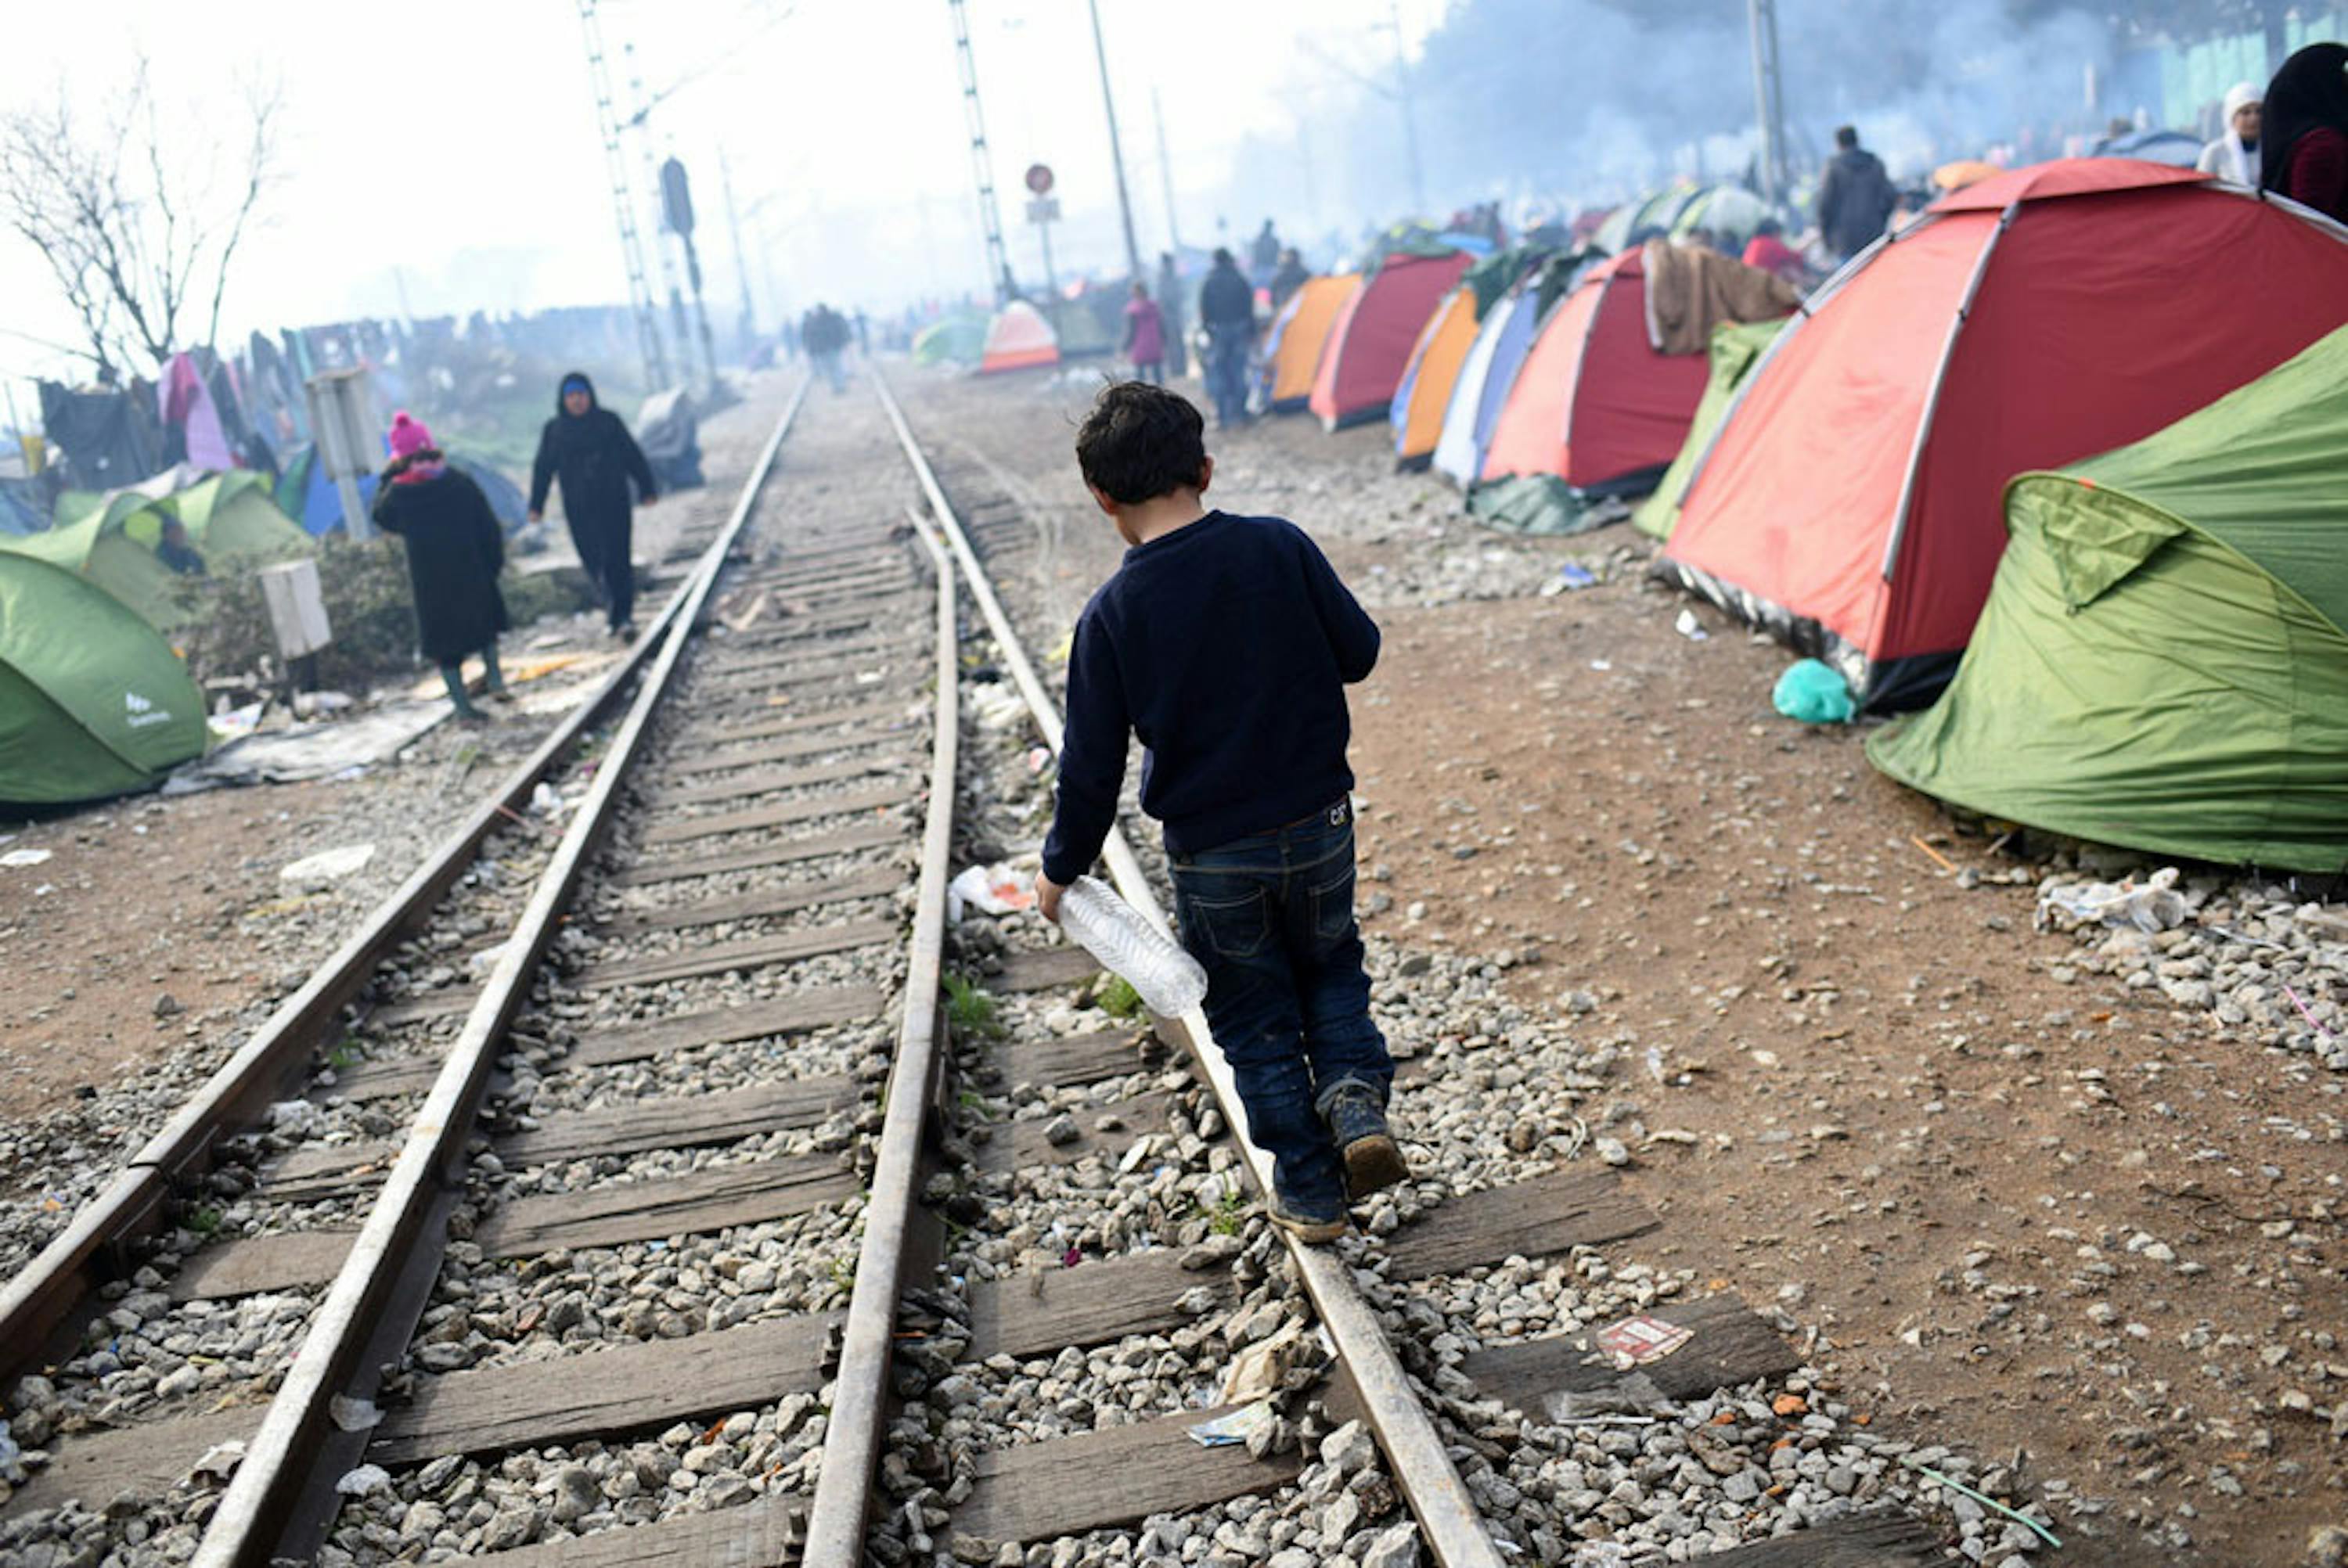 Un bambino fra i tanti accampati al confine tra Grecia e l'ex repubblica jugoslava di Macedonia - ©UNICEF/UN012790/Georgiev